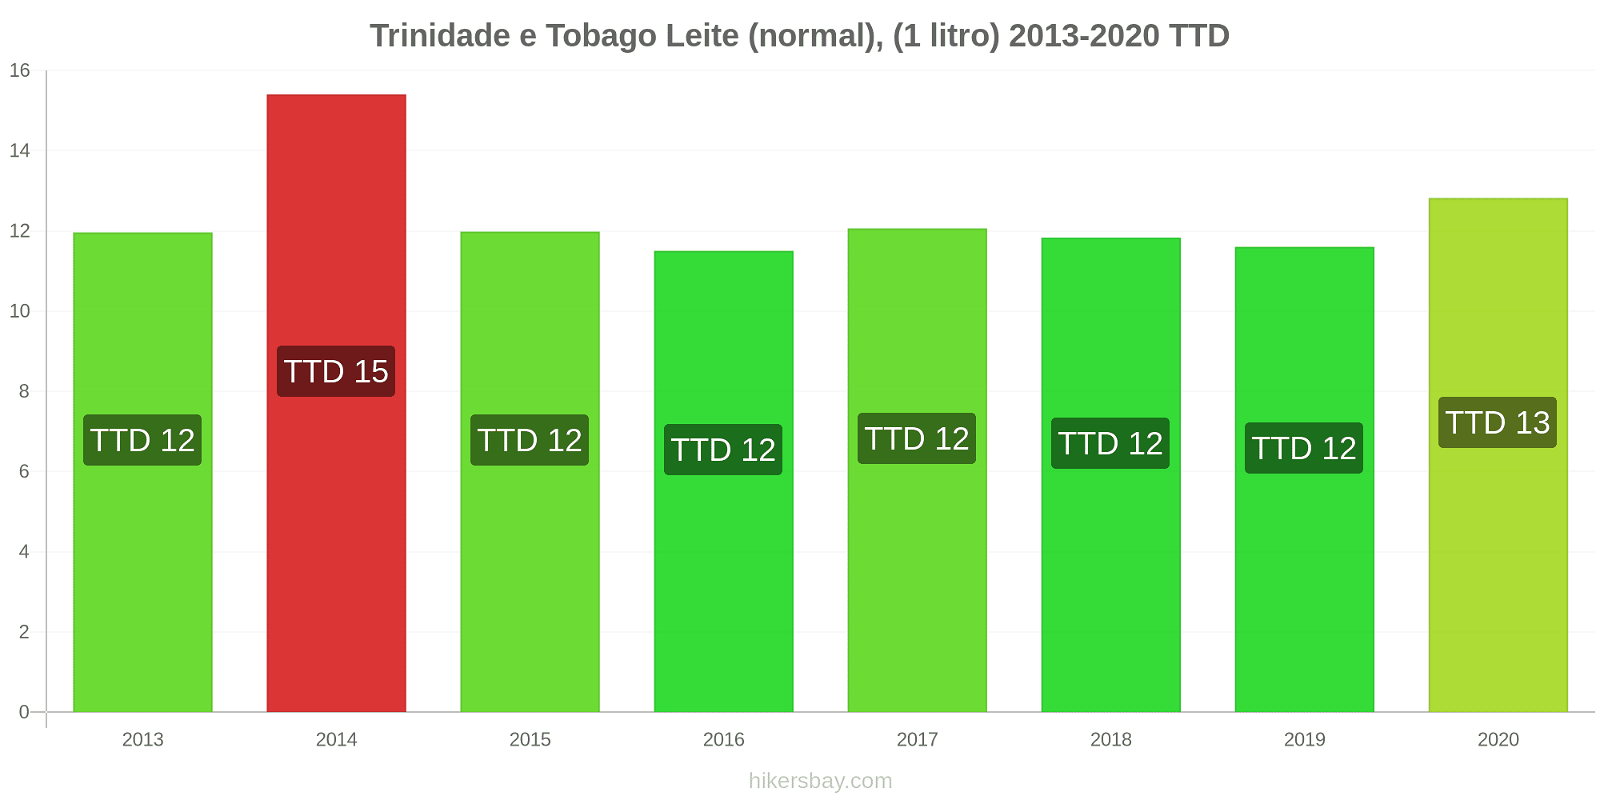 Trinidade e Tobago variação de preço (Regular), leite (1 litro) hikersbay.com